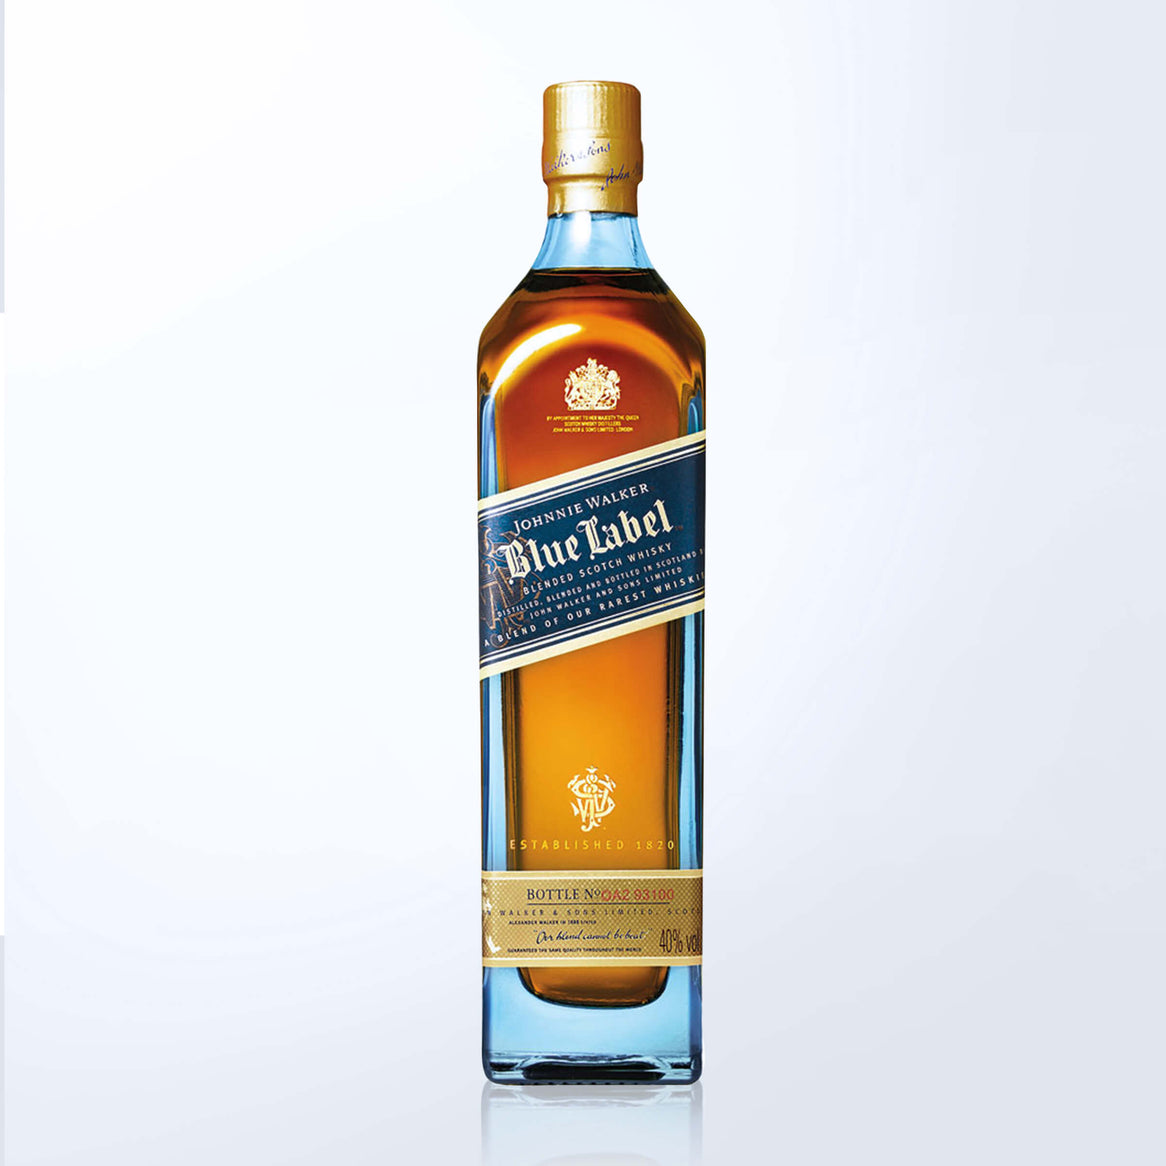 Johnny Walker Blue Label & Bottega Whisky Glasses Gift Set with Engraving |尊尼獲加藍標&Bottega威士忌杯套裝(含文字人像雕刻) - Design Your Own Wine